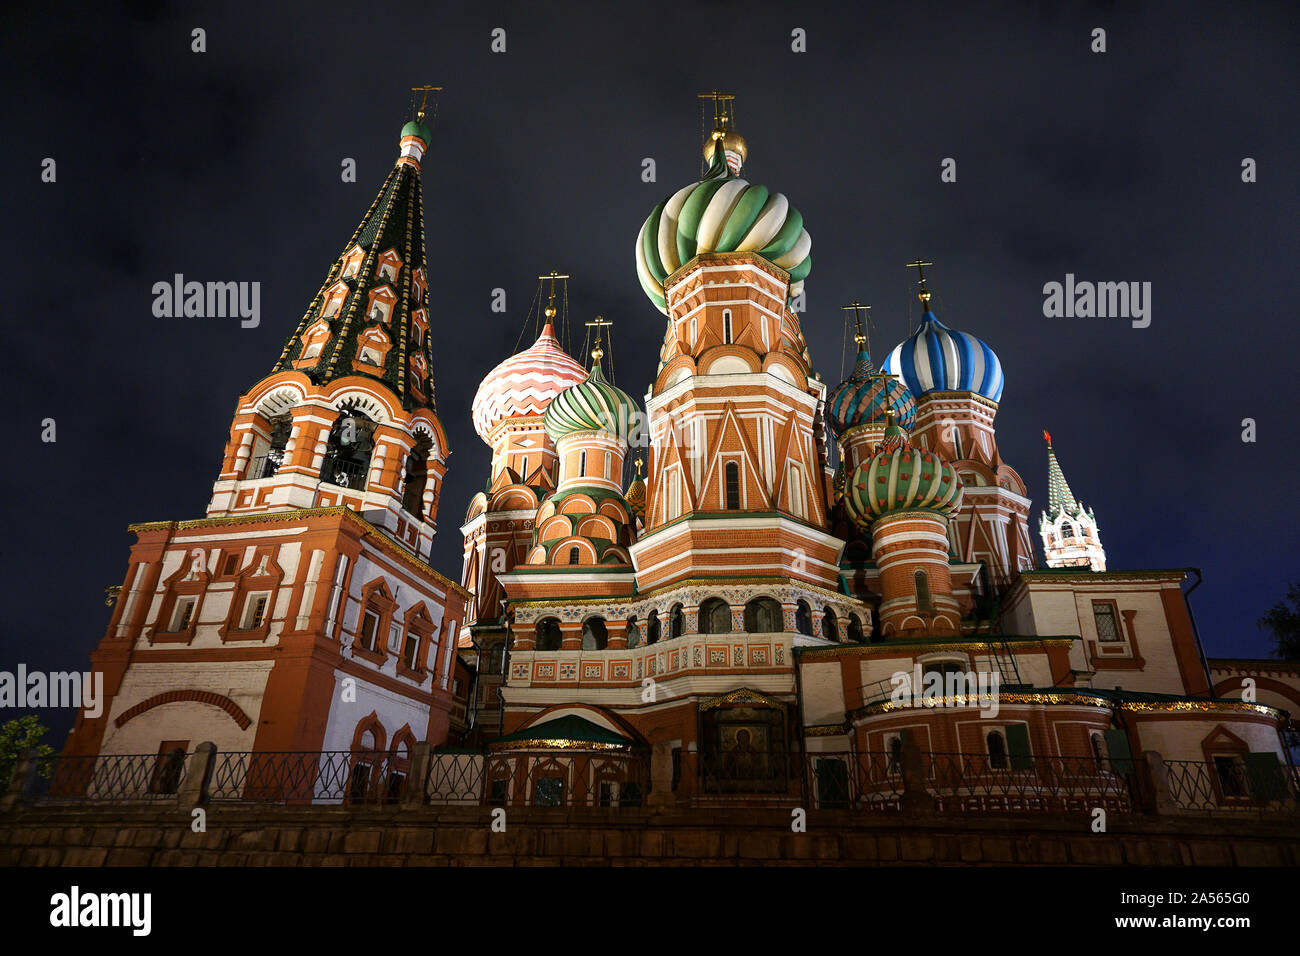 Die Kathedrale von Vasily dem gesegnet, wie Basilius-kathedrale bekannt, ist eine Kirche auf dem Roten Platz in Moskau und gilt als Symbol des Landes angesehen. Stockfoto